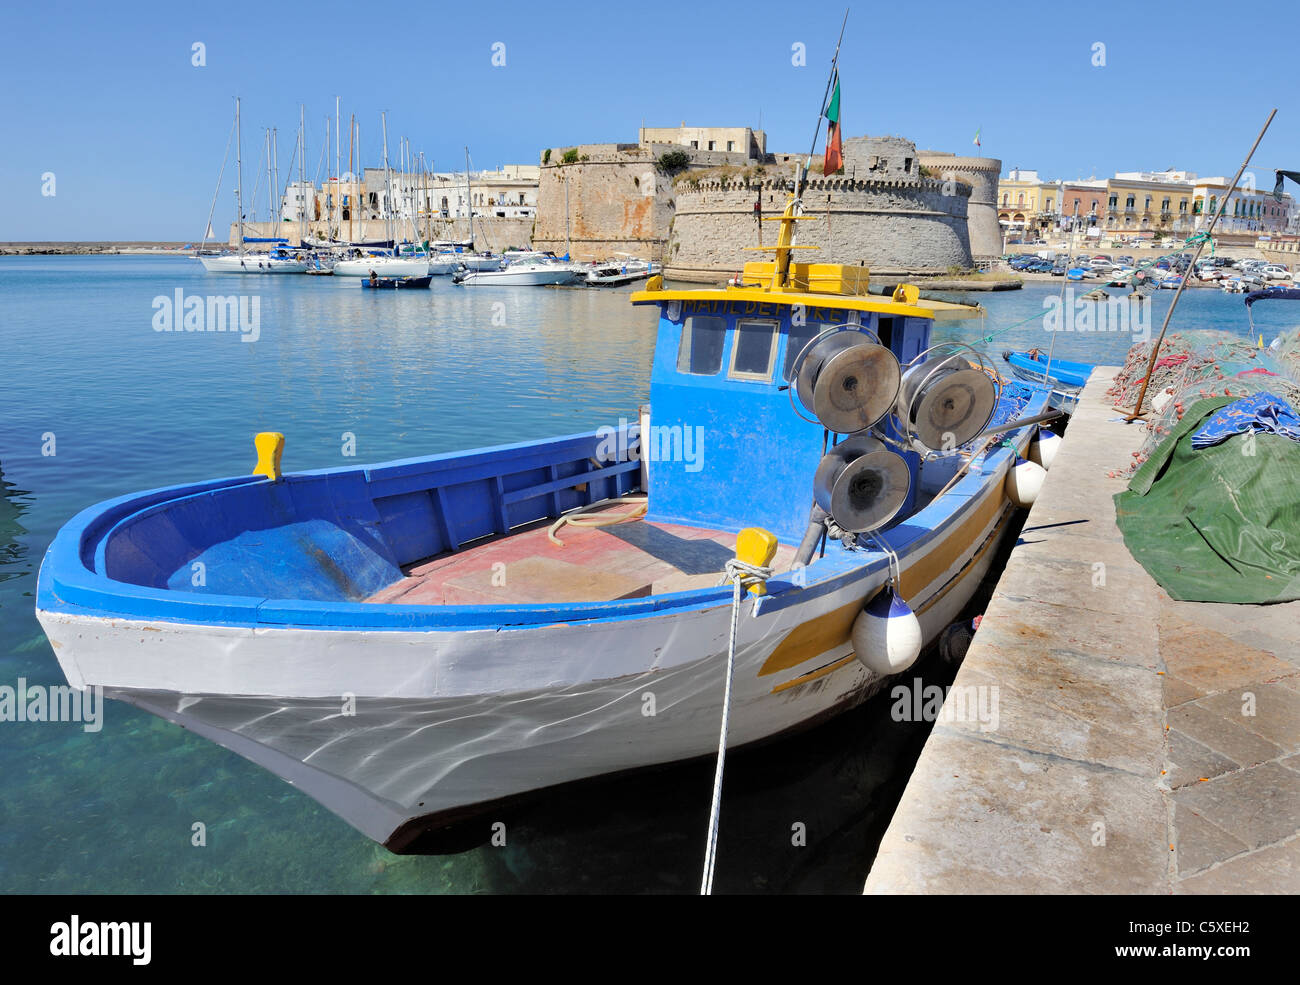 Angelboot/Fischerboot im Hafen vor dem alten Schloss bei Gallipoli, Italien Stockfoto